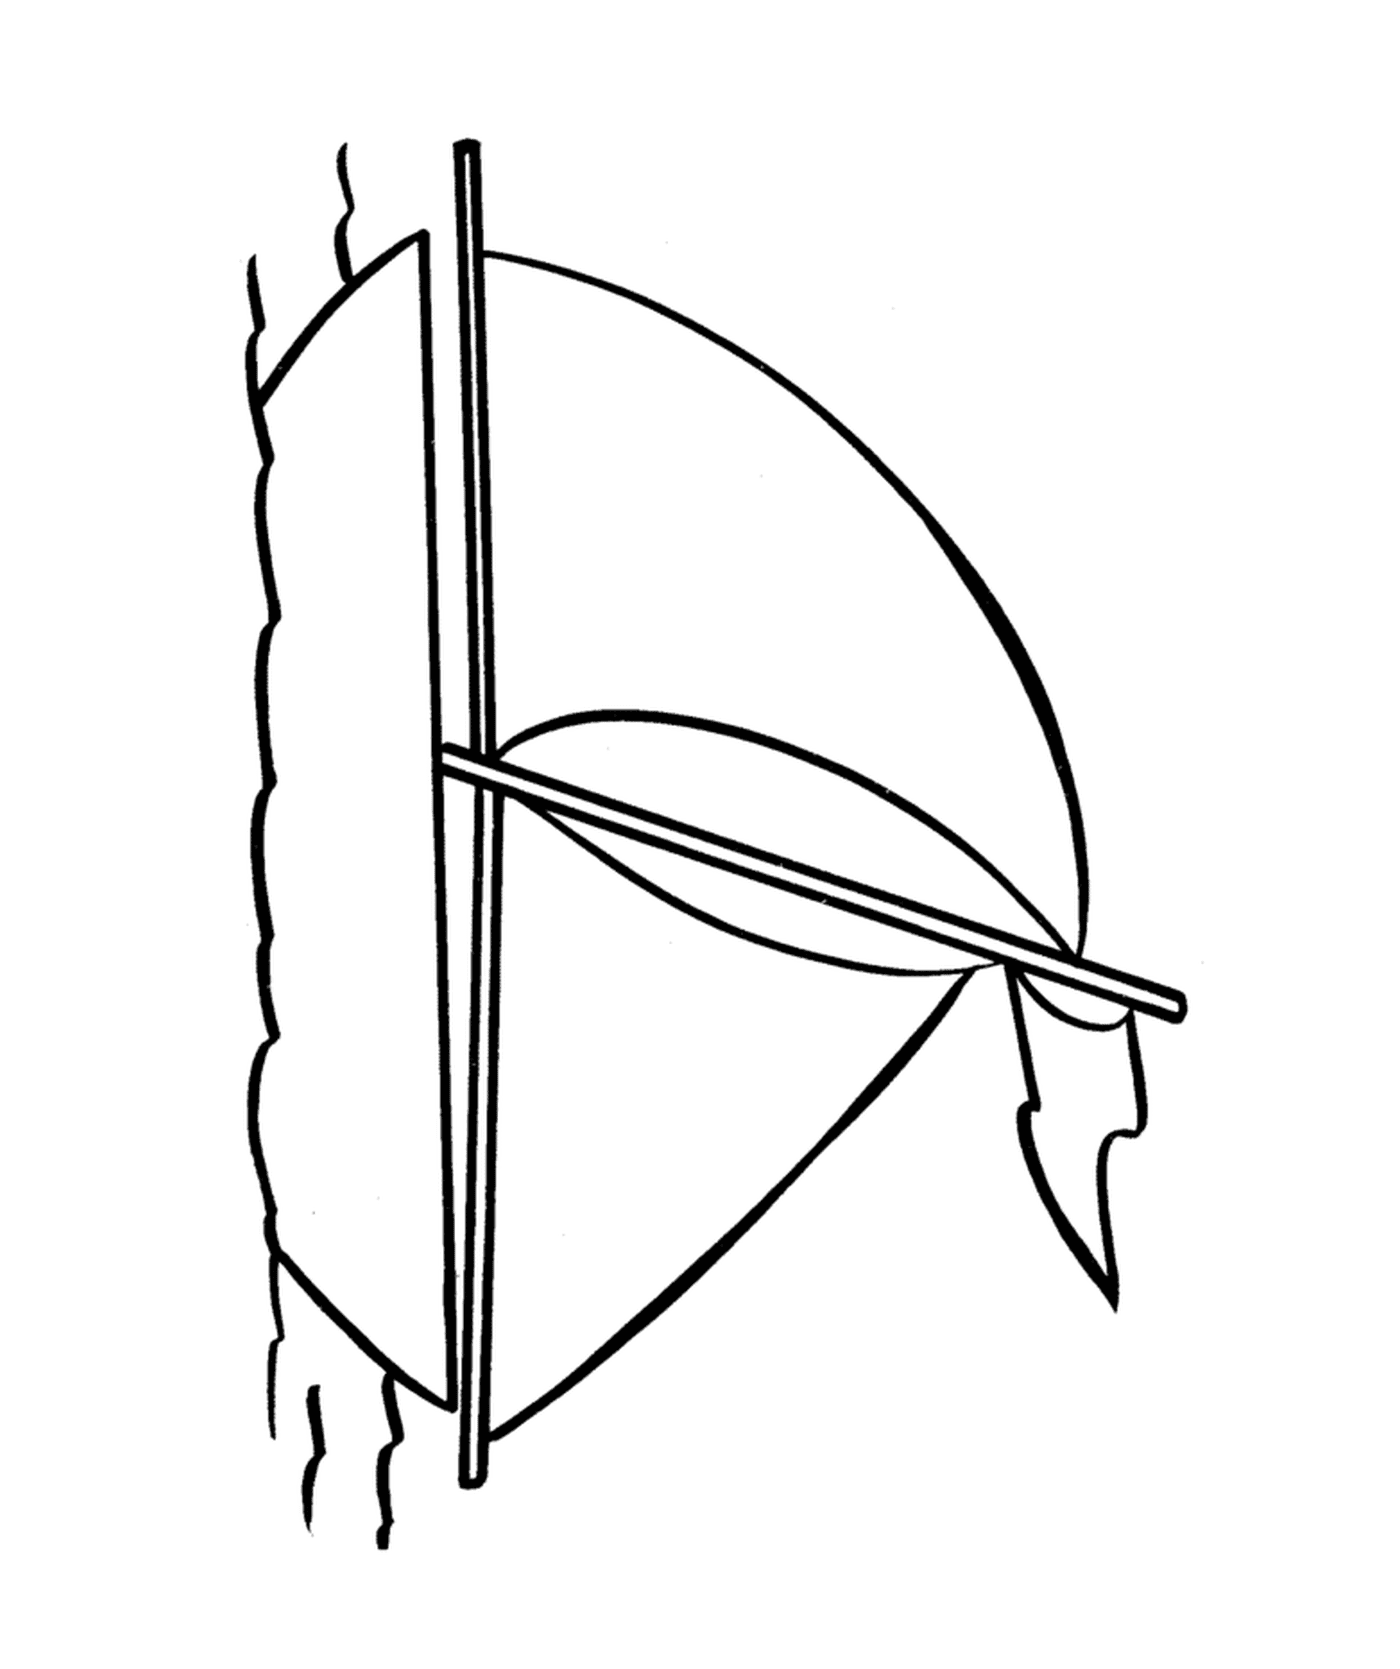  Un arco e una freccia 